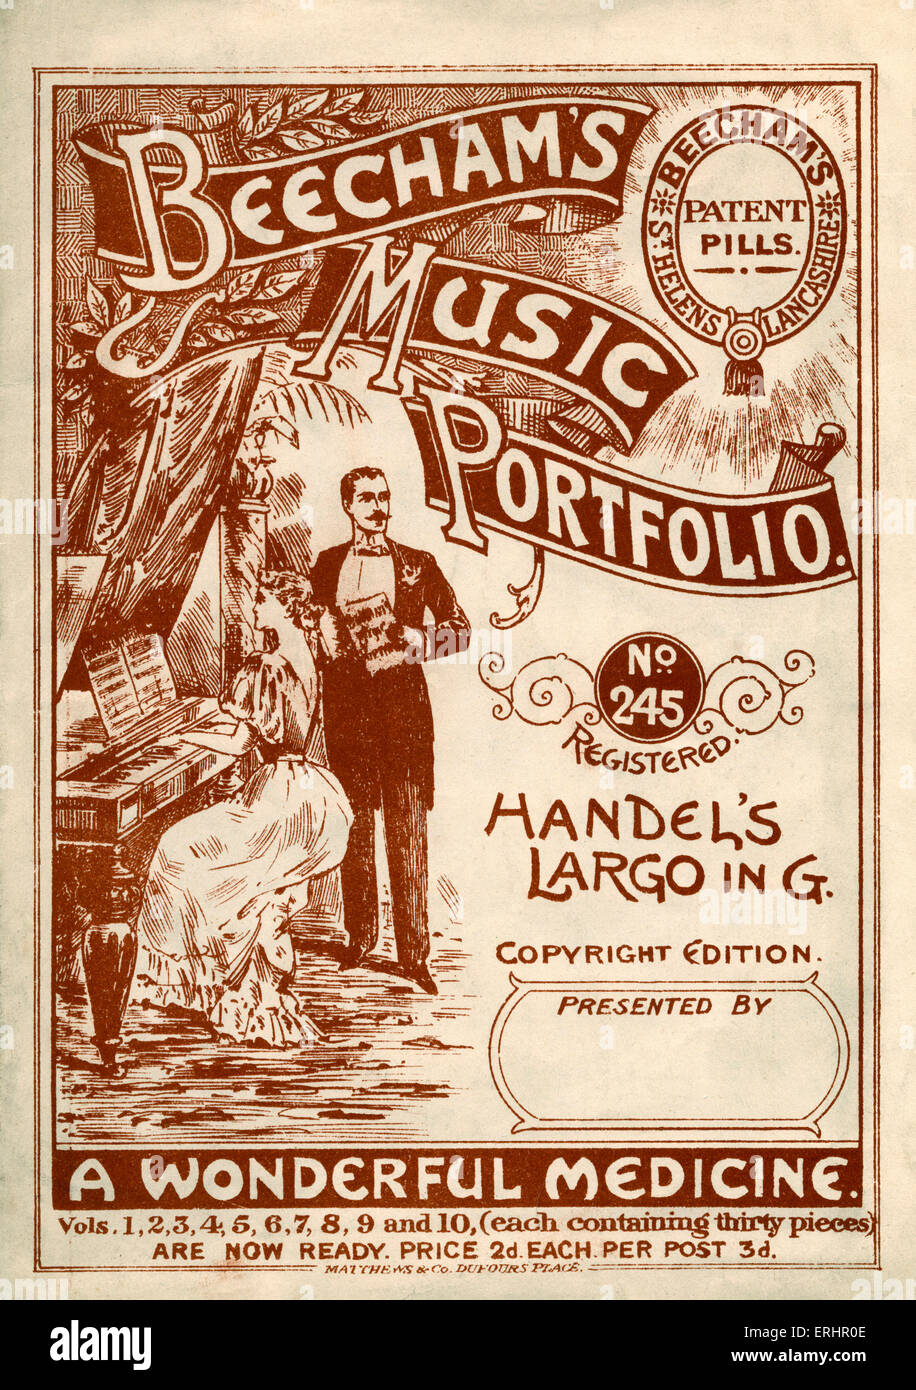 Beecham's Music Portfolio - no. 245 : Largo de Haendel dans G. Copyright édition publiée par Beechams Comprimés de brevets. Publicité Banque D'Images